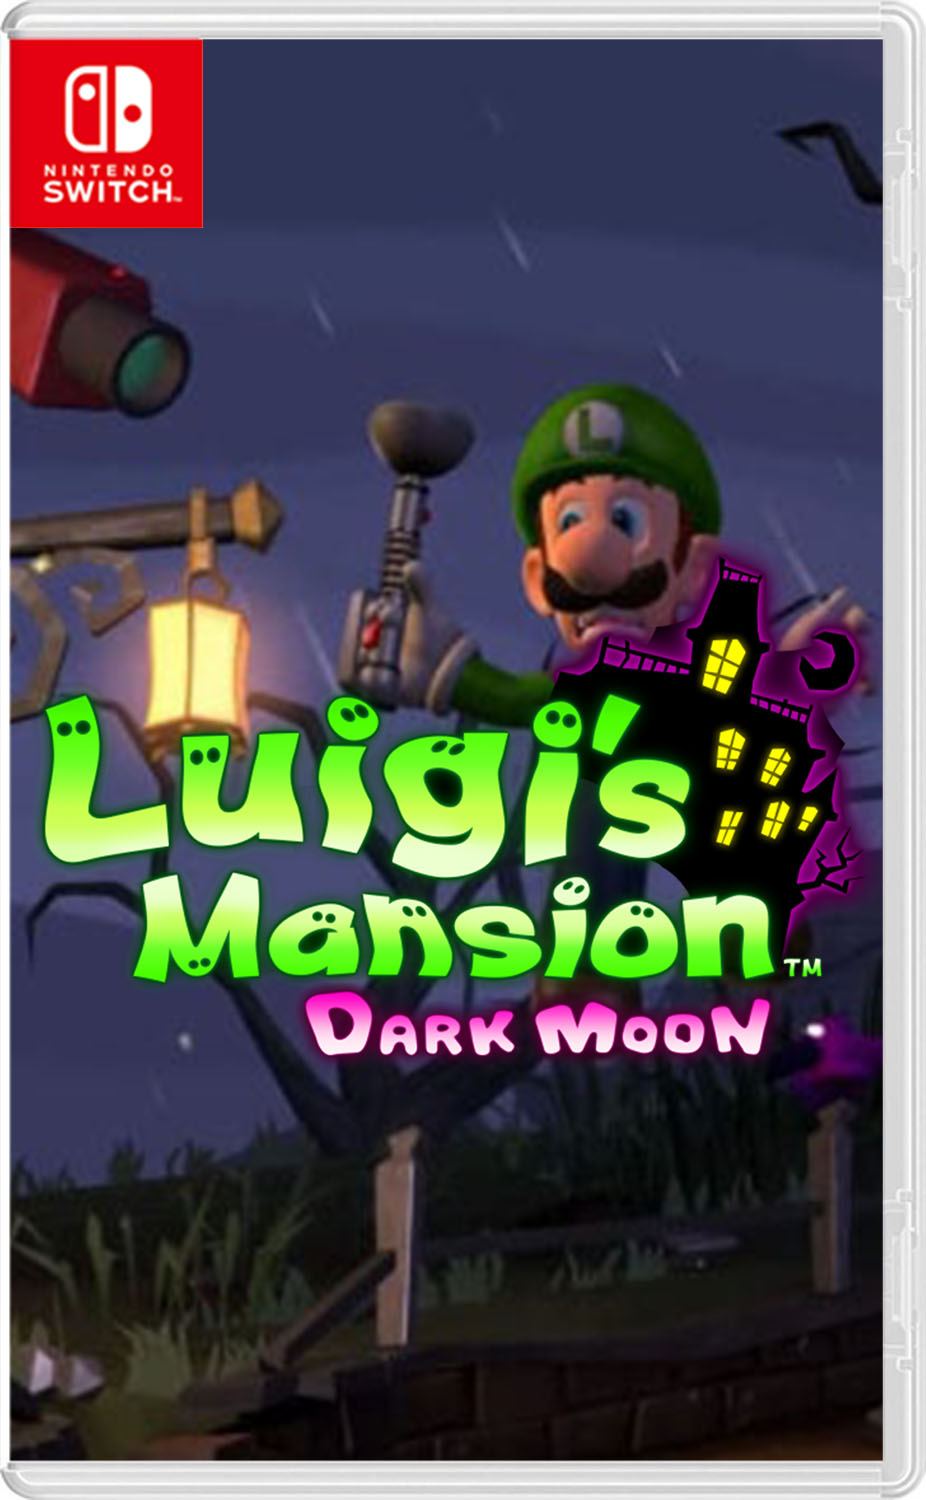 DARK MOON IS ON SWITCH! : r/LuigisMansion